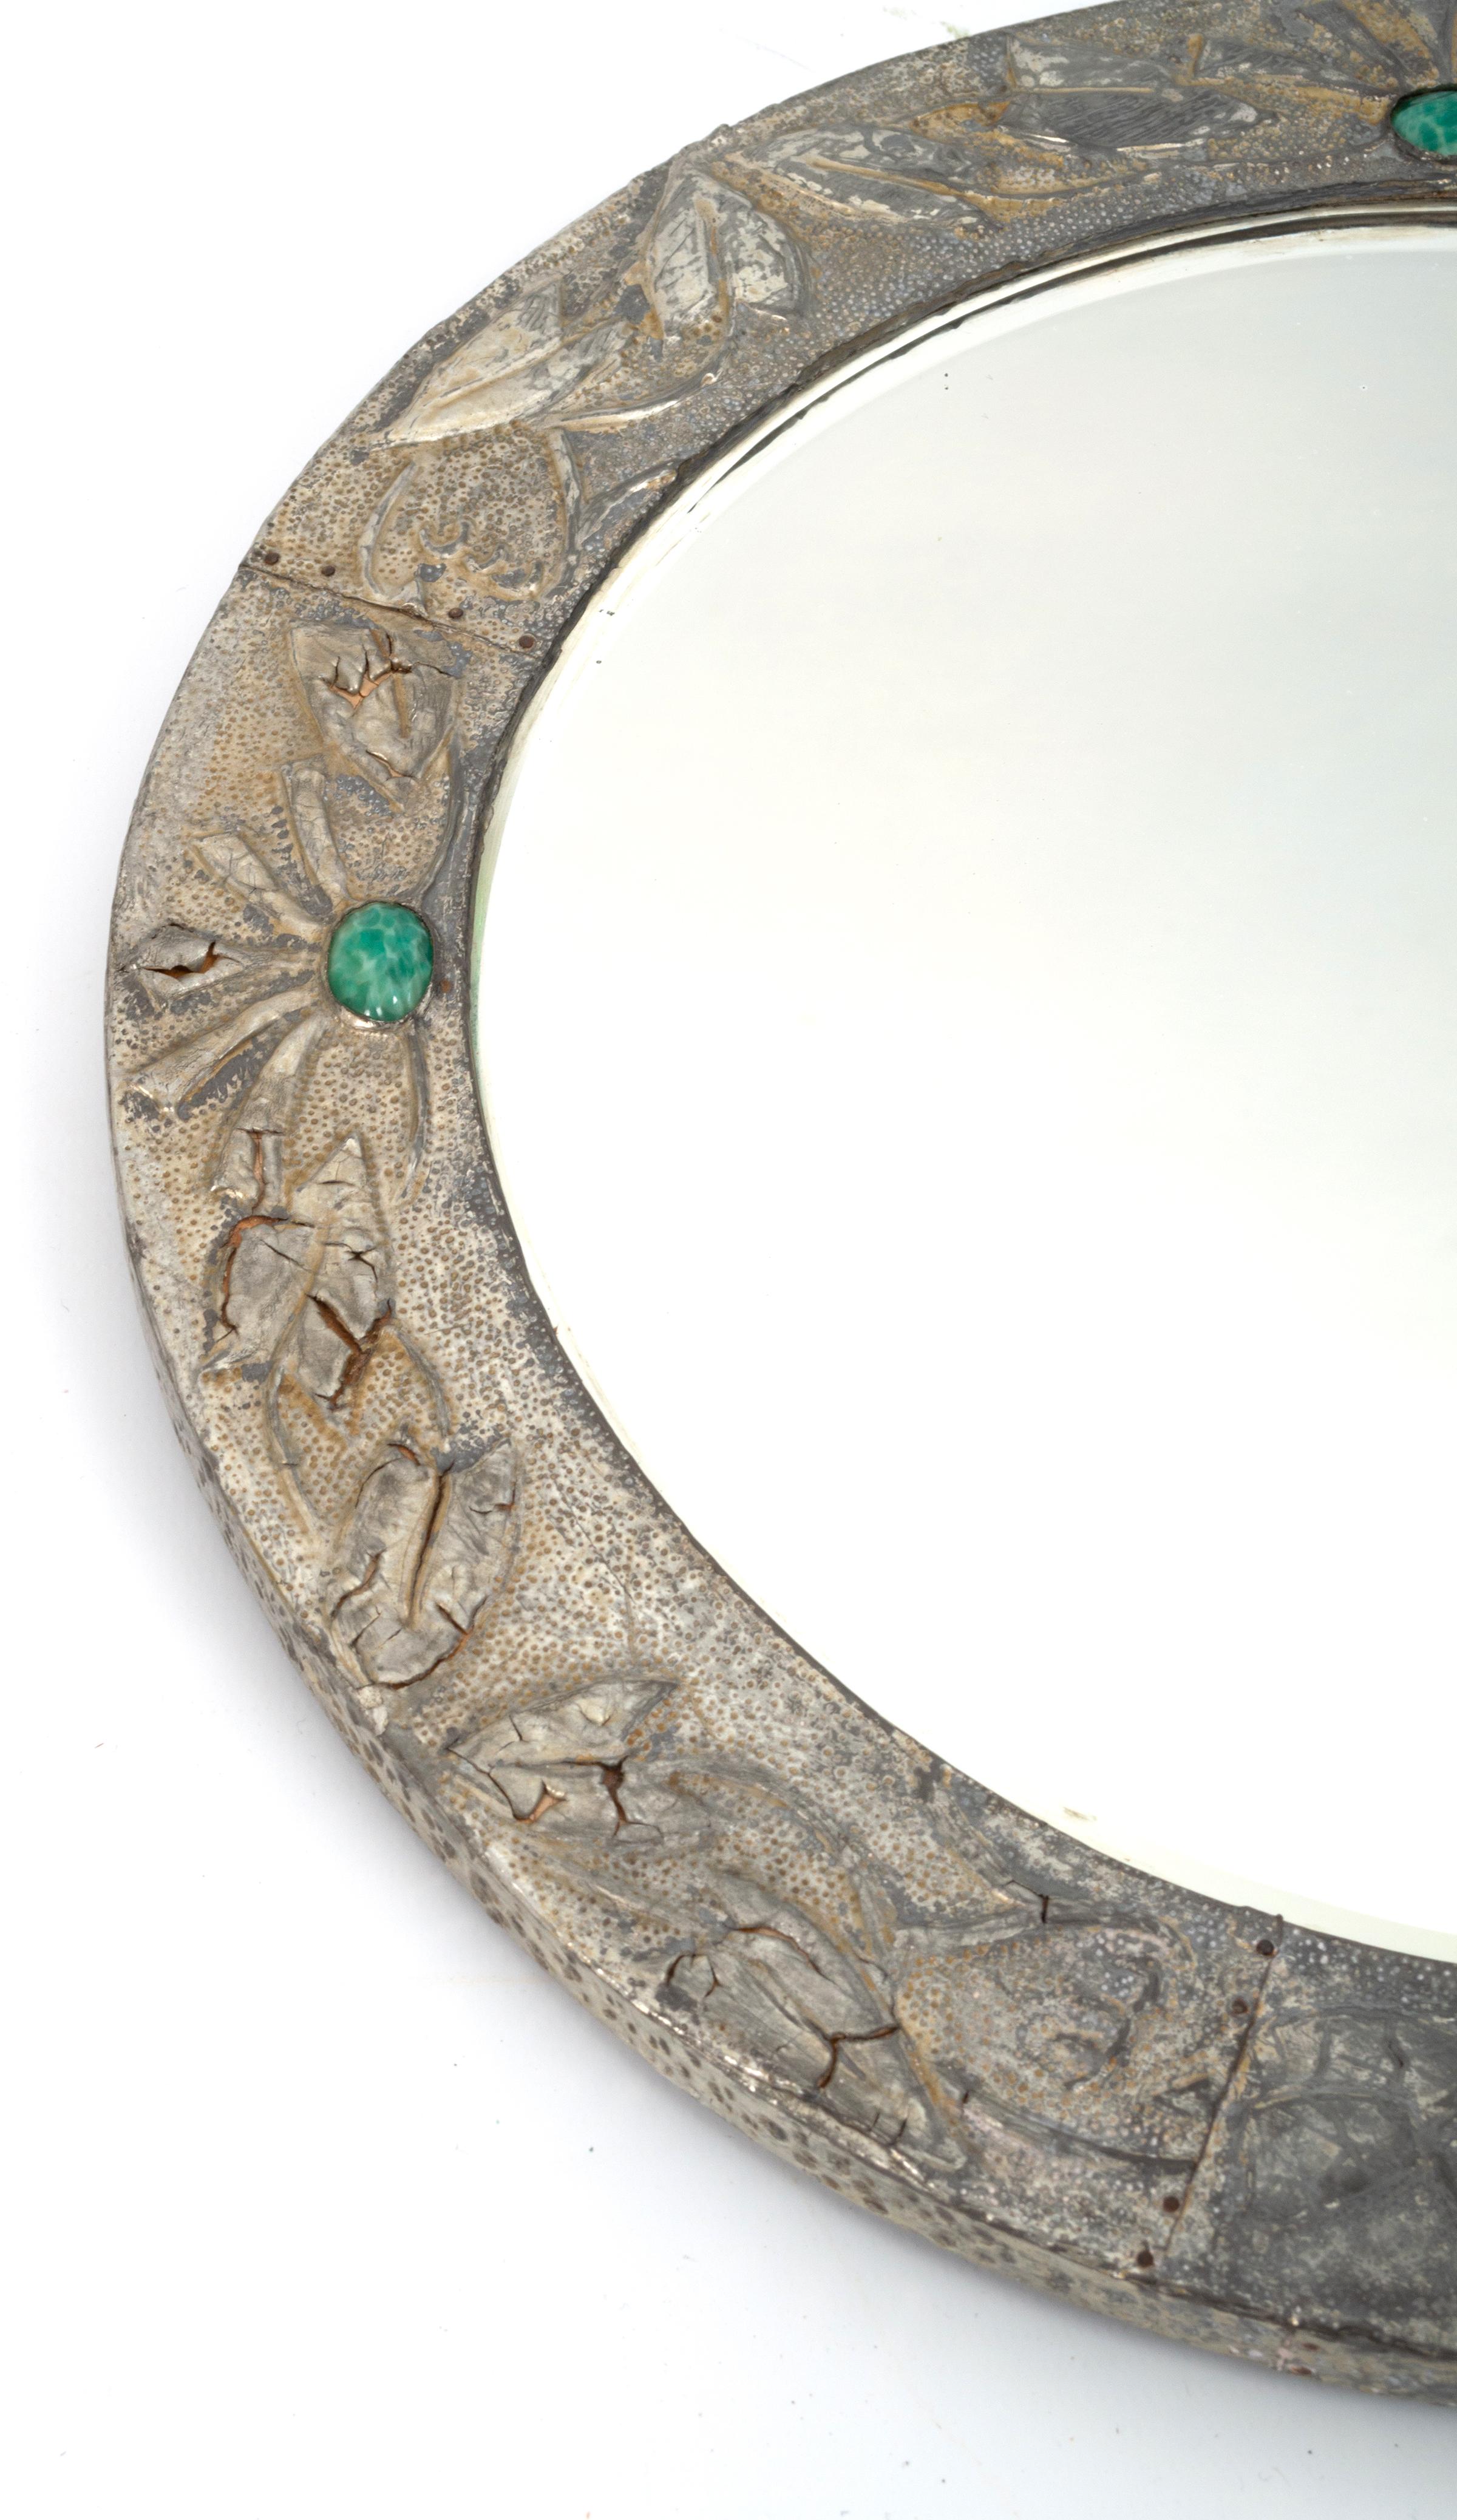 Antiker englischer Arts & Crafts kreisförmiger Cabochon-Wandspiegel aus Zinn 
C.1900
Ein schönes Beispiel. 
In gutem, dem Alter entsprechendem Zustand. Einige sehr geringfügige Stockflecken auf dem ursprünglichen Spiegel und Lochfraß auf dem Zinn